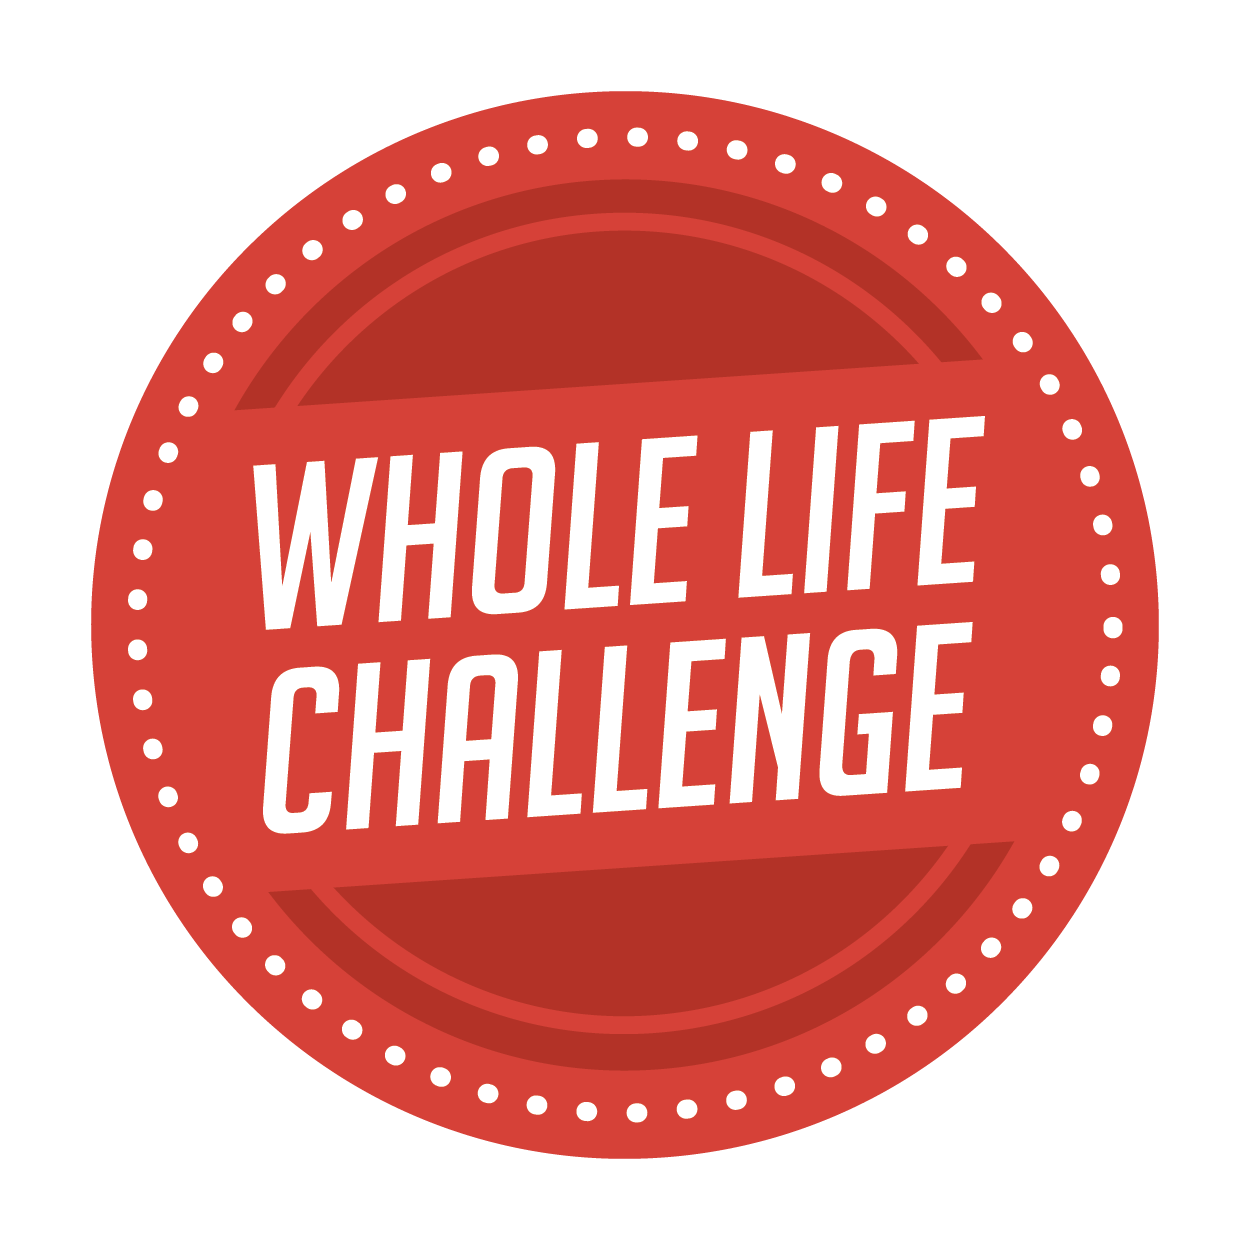 Whole Life Challenge